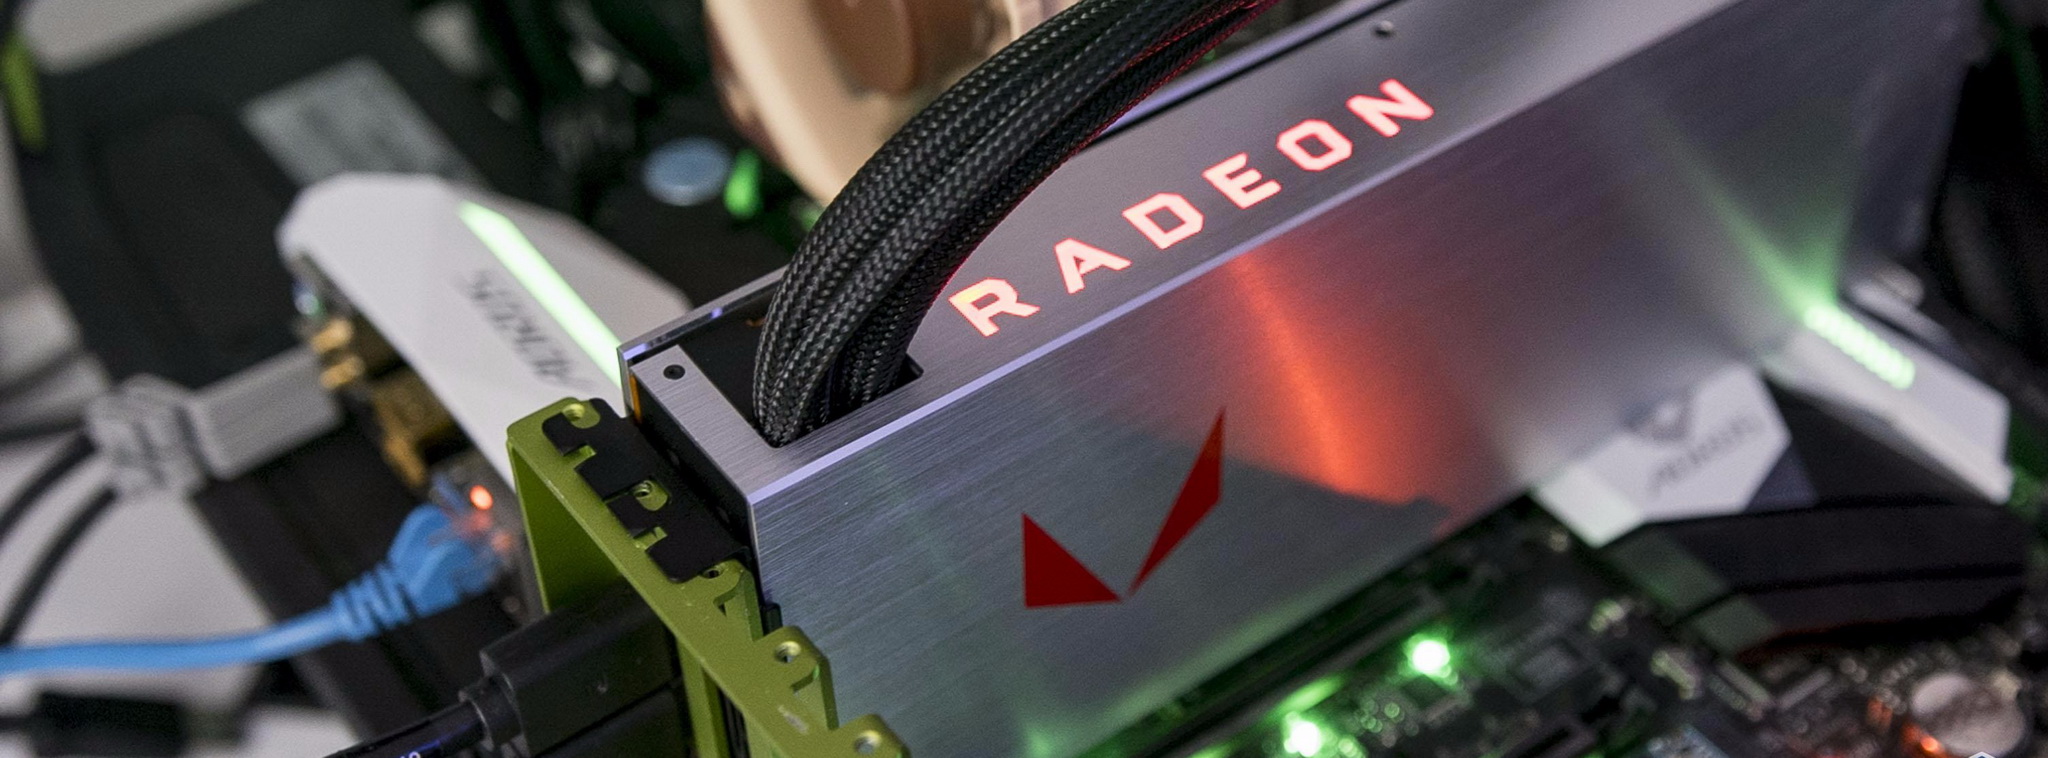 Flash BIOS cho Radeon RX Vega 56, tăng hiệu năng card đến 20%